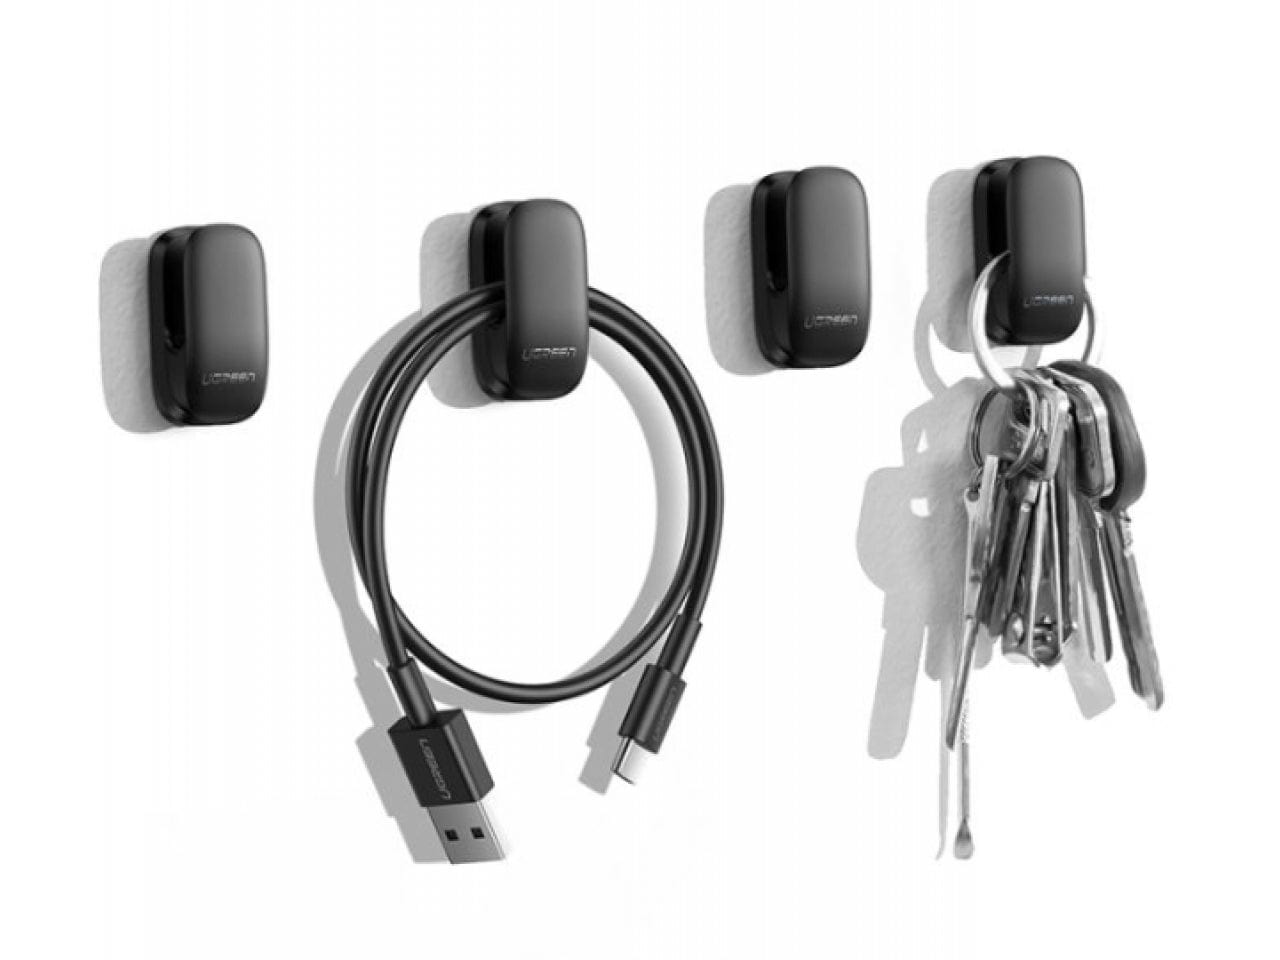 Auto Haken Innen Lagerung Halter für USB Kabel Kopfhörer Schlüssel  Selbst-Adhesive Dashboard Wand Hängen Haken Auto Zubehör - AliExpress